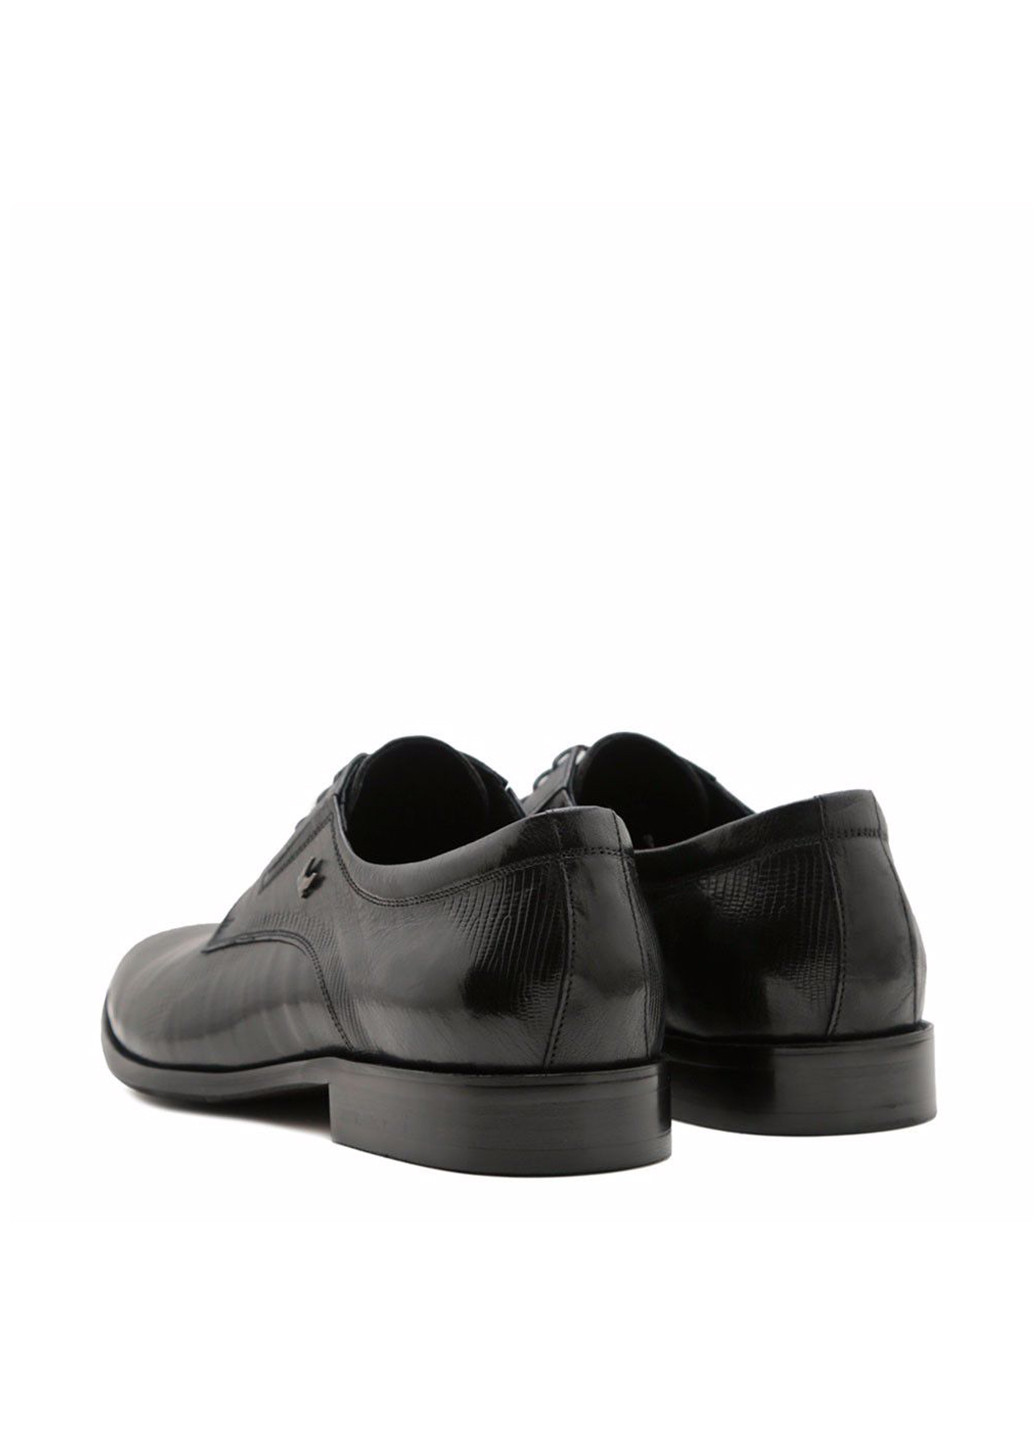 Черные классические туфли Prego на шнурках